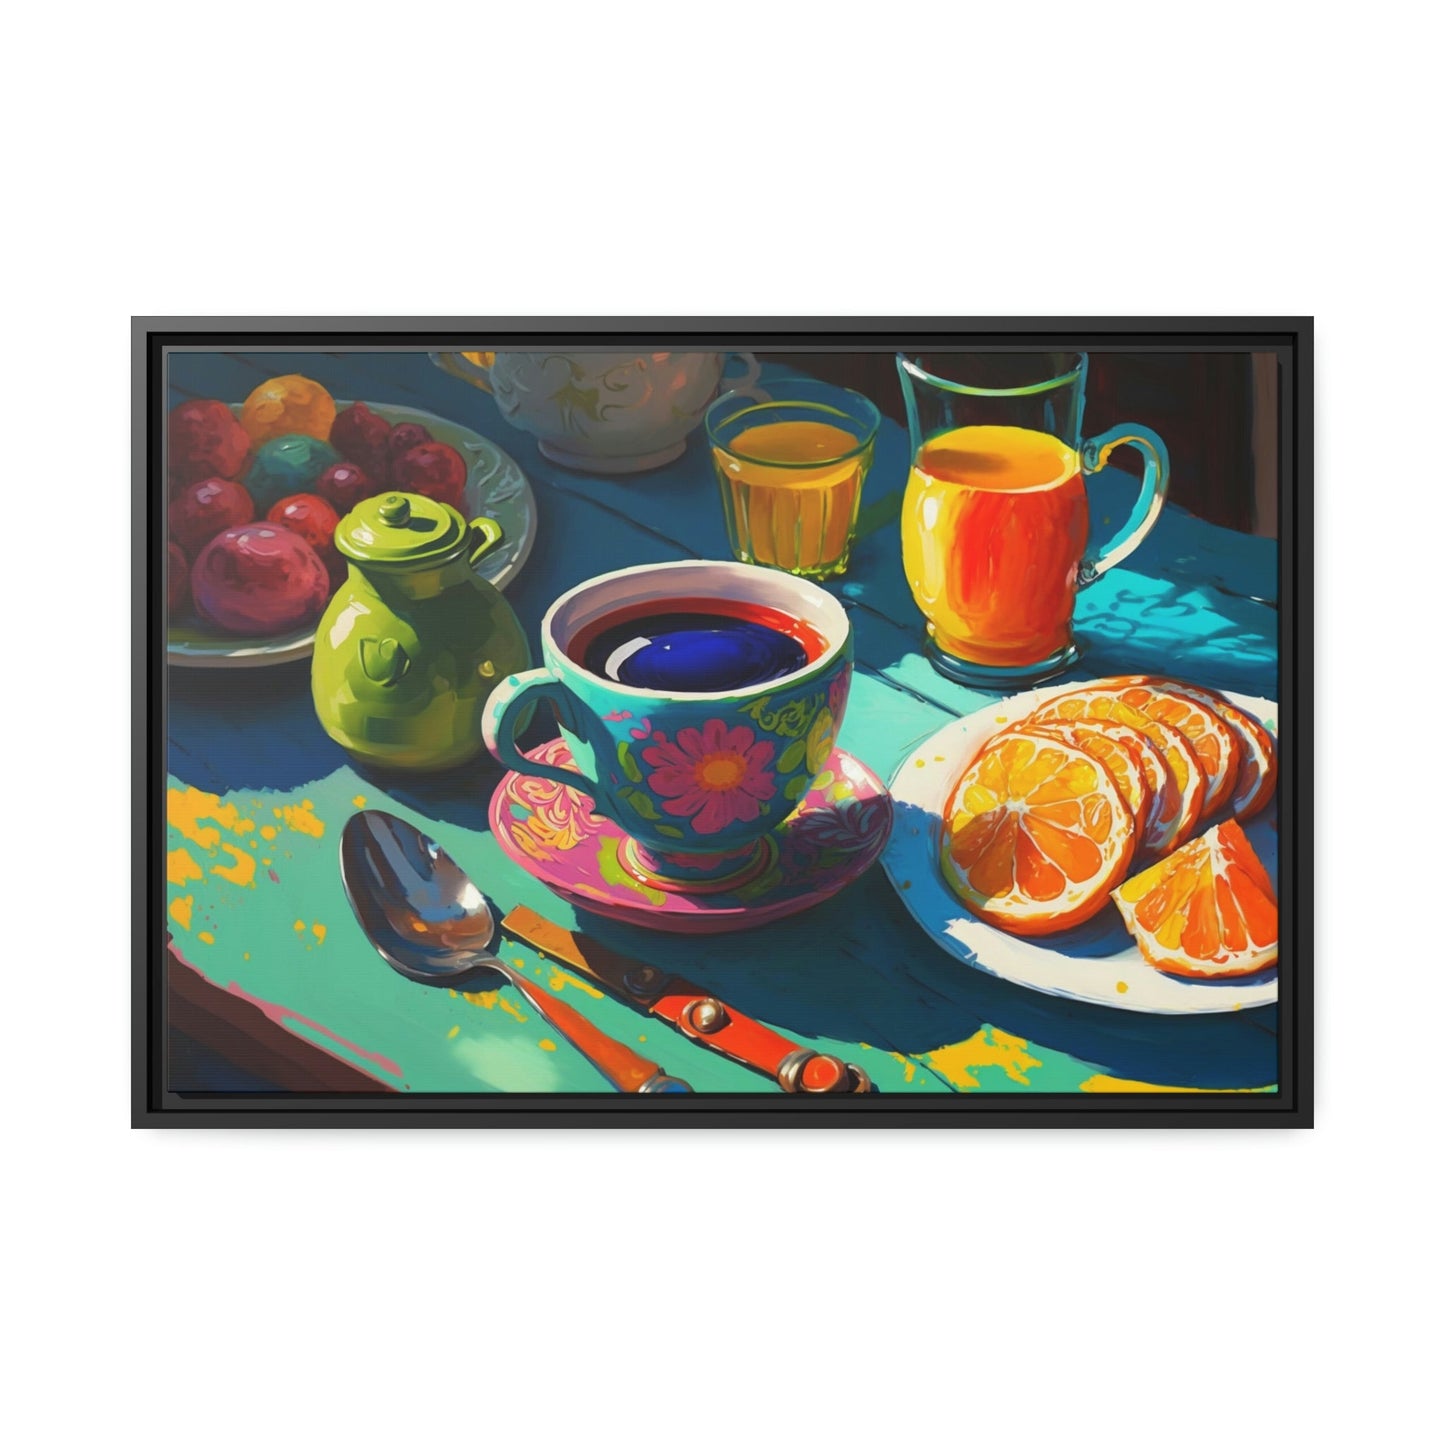 Scrumptious Start: Natural Canvas Print of a Tasty Breakfast Buffet